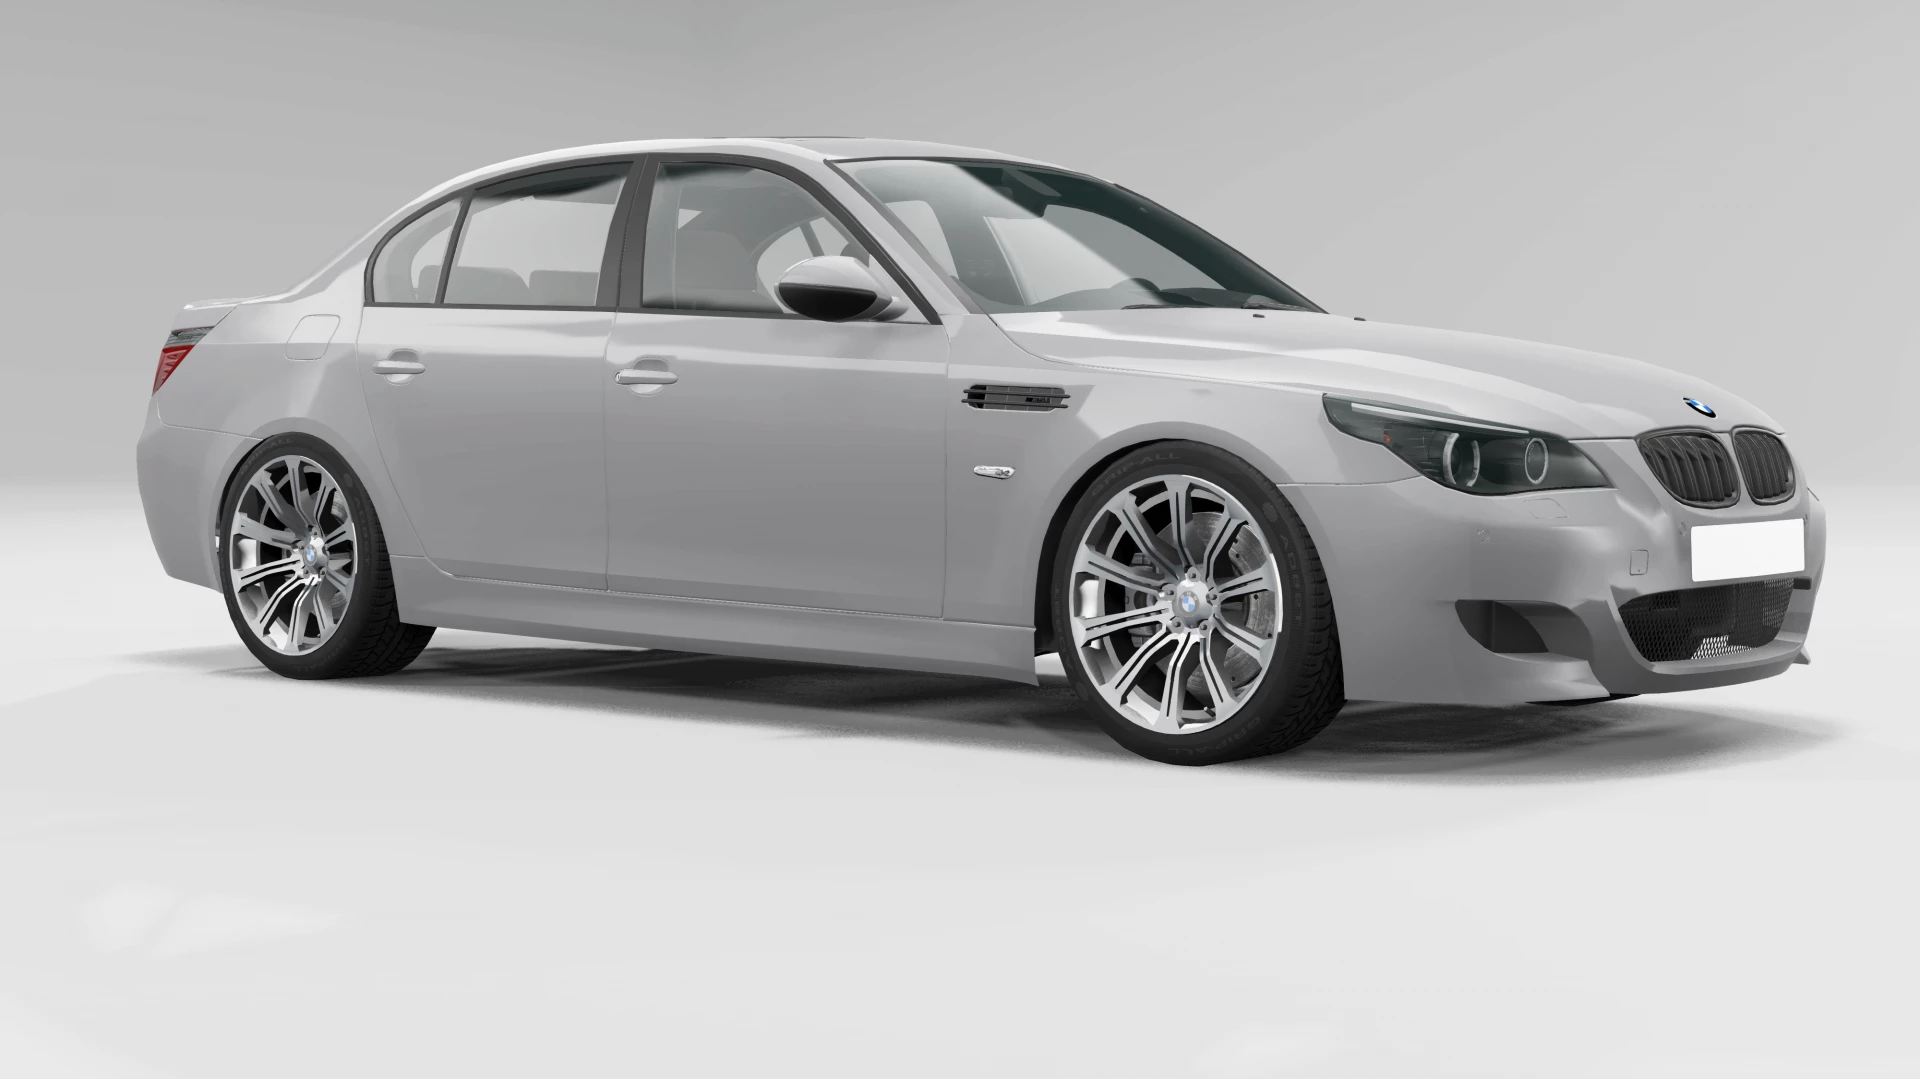 BMW 5-Series E60 LCI 2.0 - BeamNG.drive